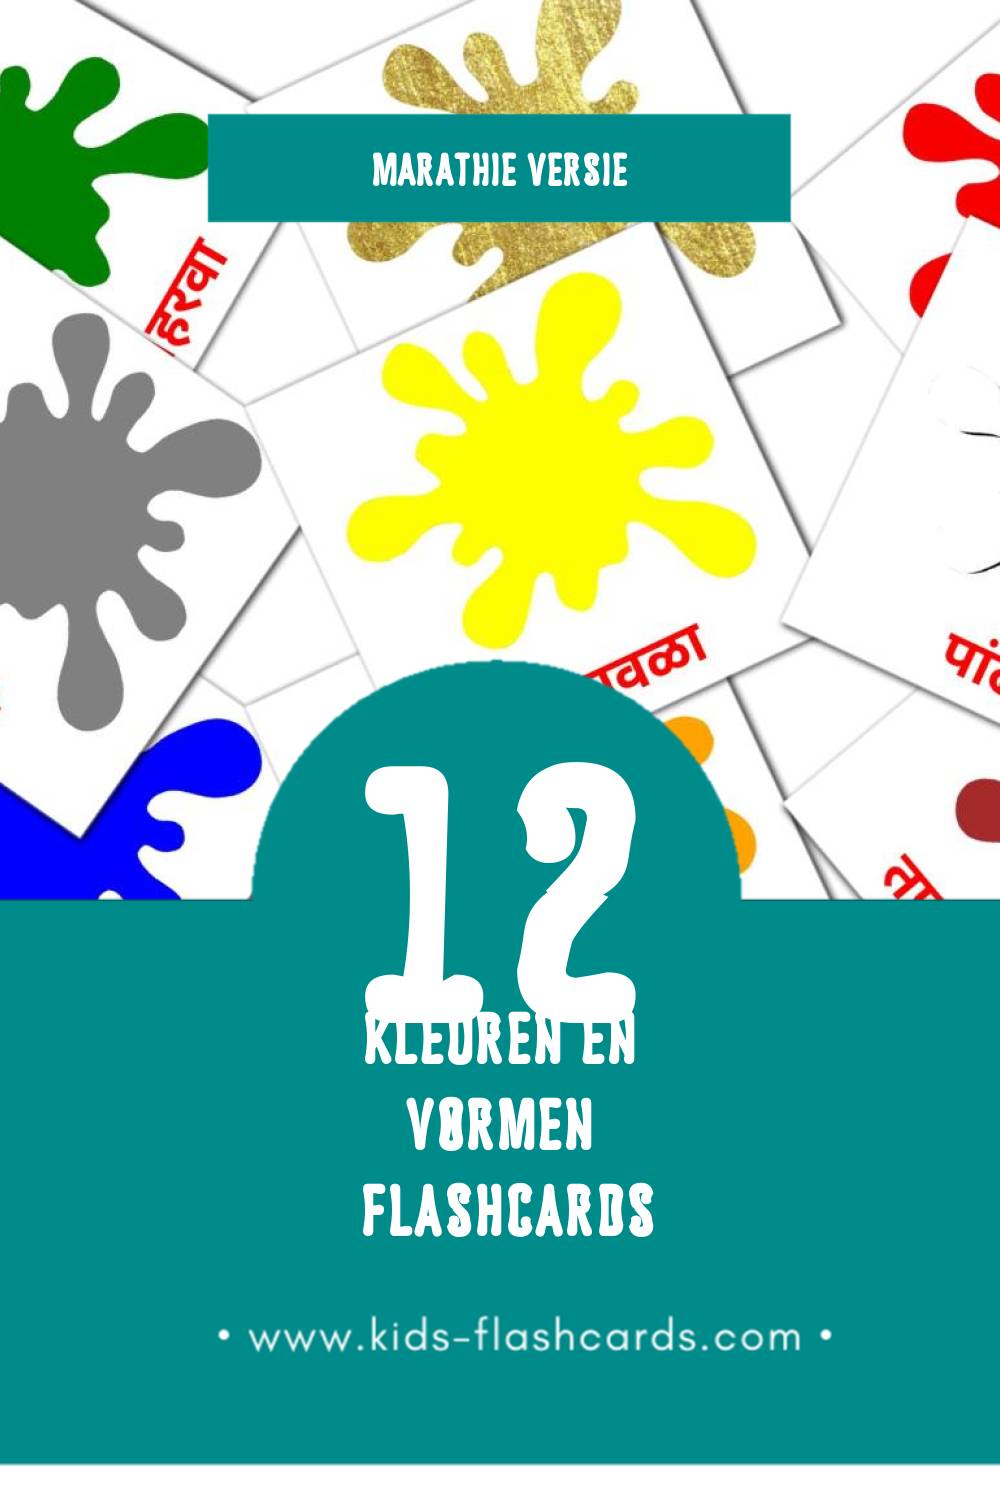 Visuele रंग आणि आकार Flashcards voor Kleuters (12 kaarten in het Marathi)